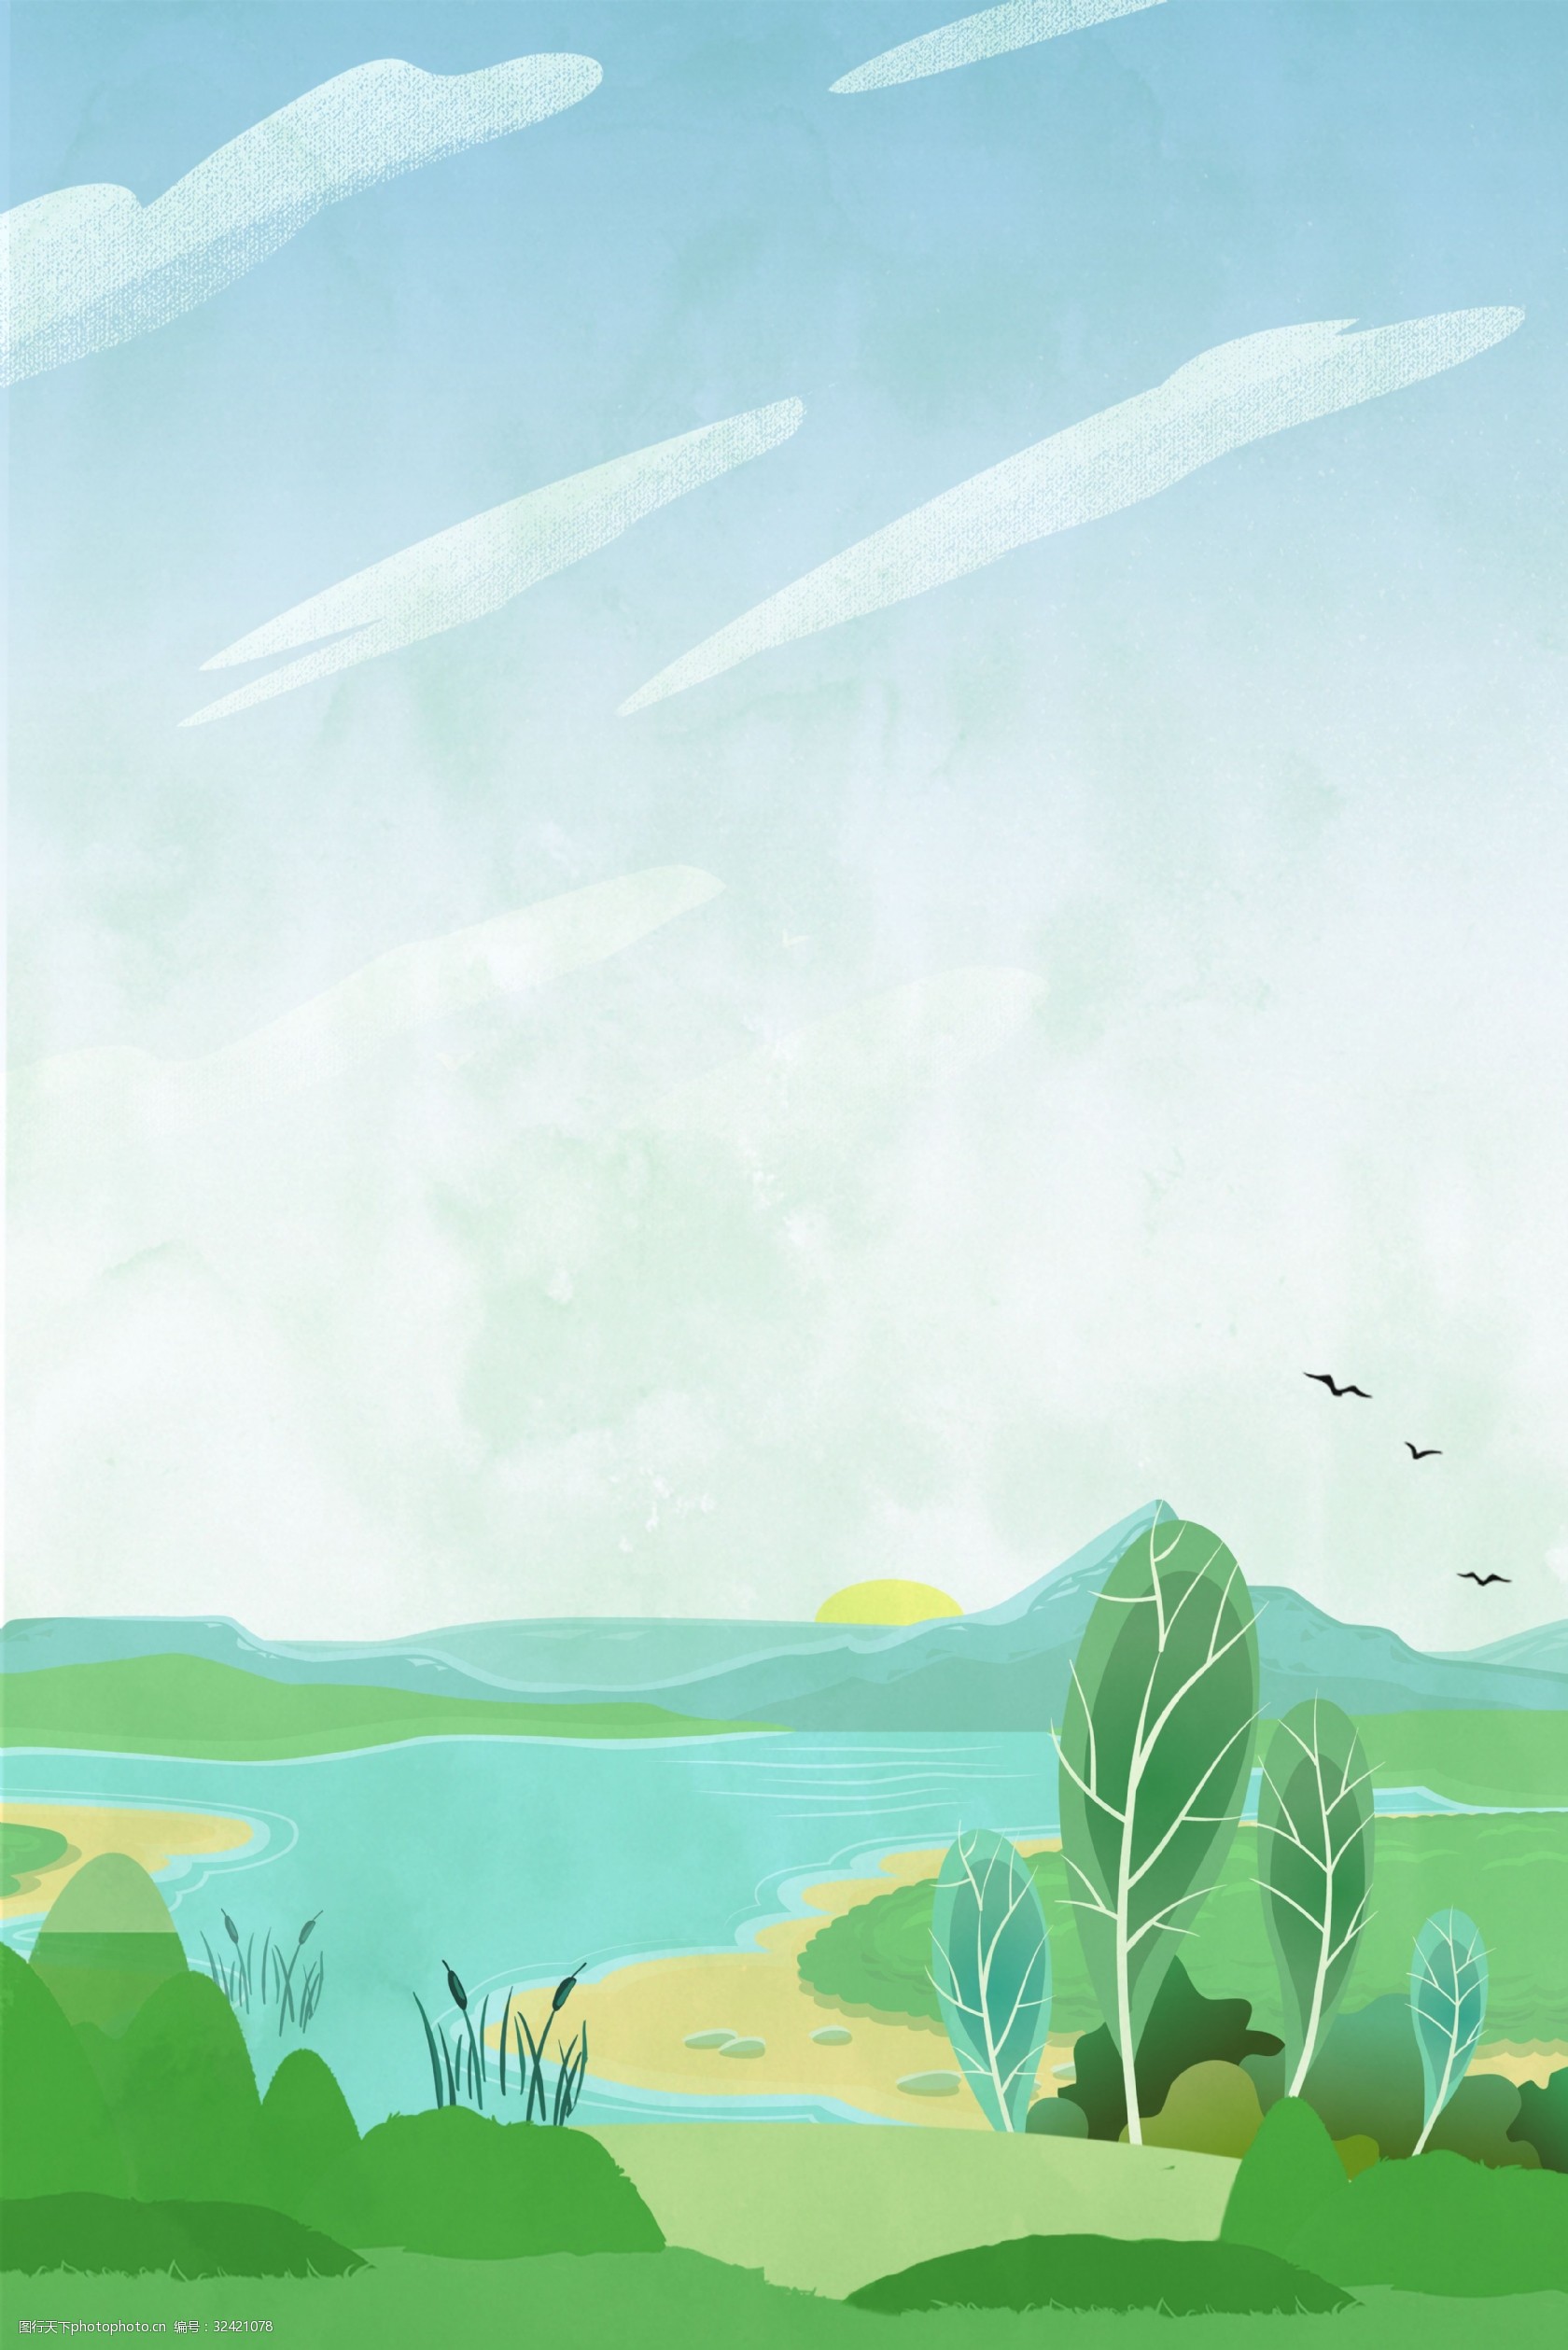 关键词:卡通绿色湿地公园背景海报 环境保护 矢量 卡通 简约 湿地